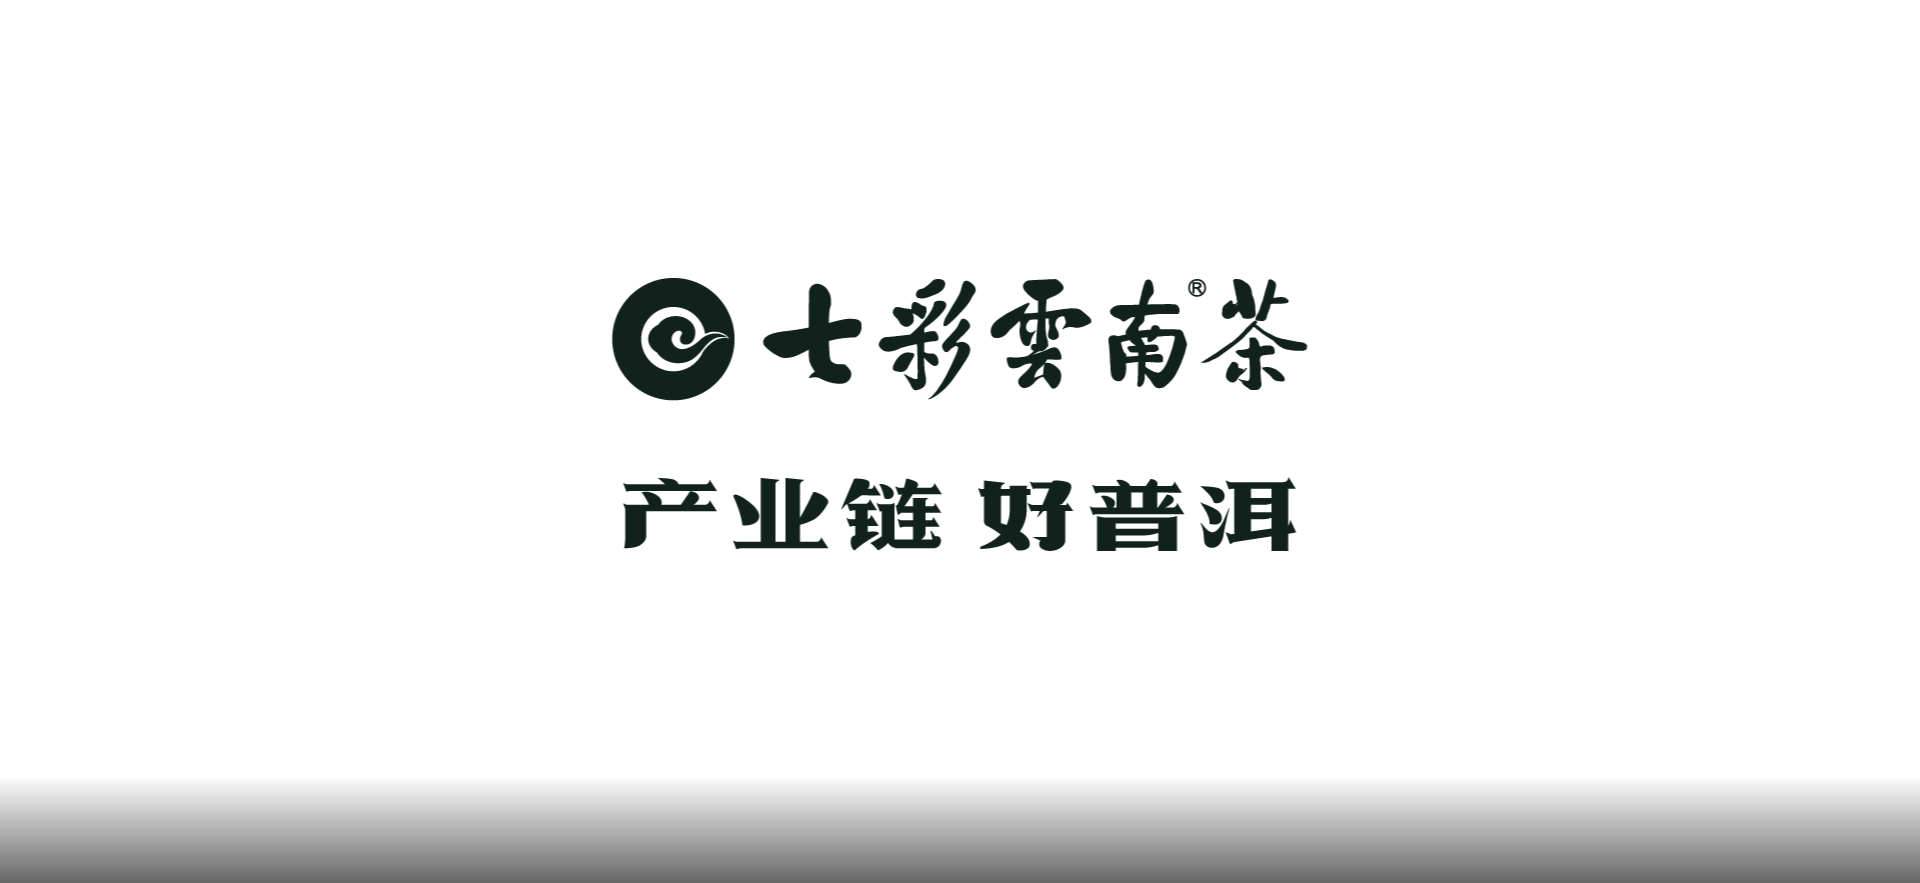 七彩云南®茶——品牌长画卷背后的创作故事（一）